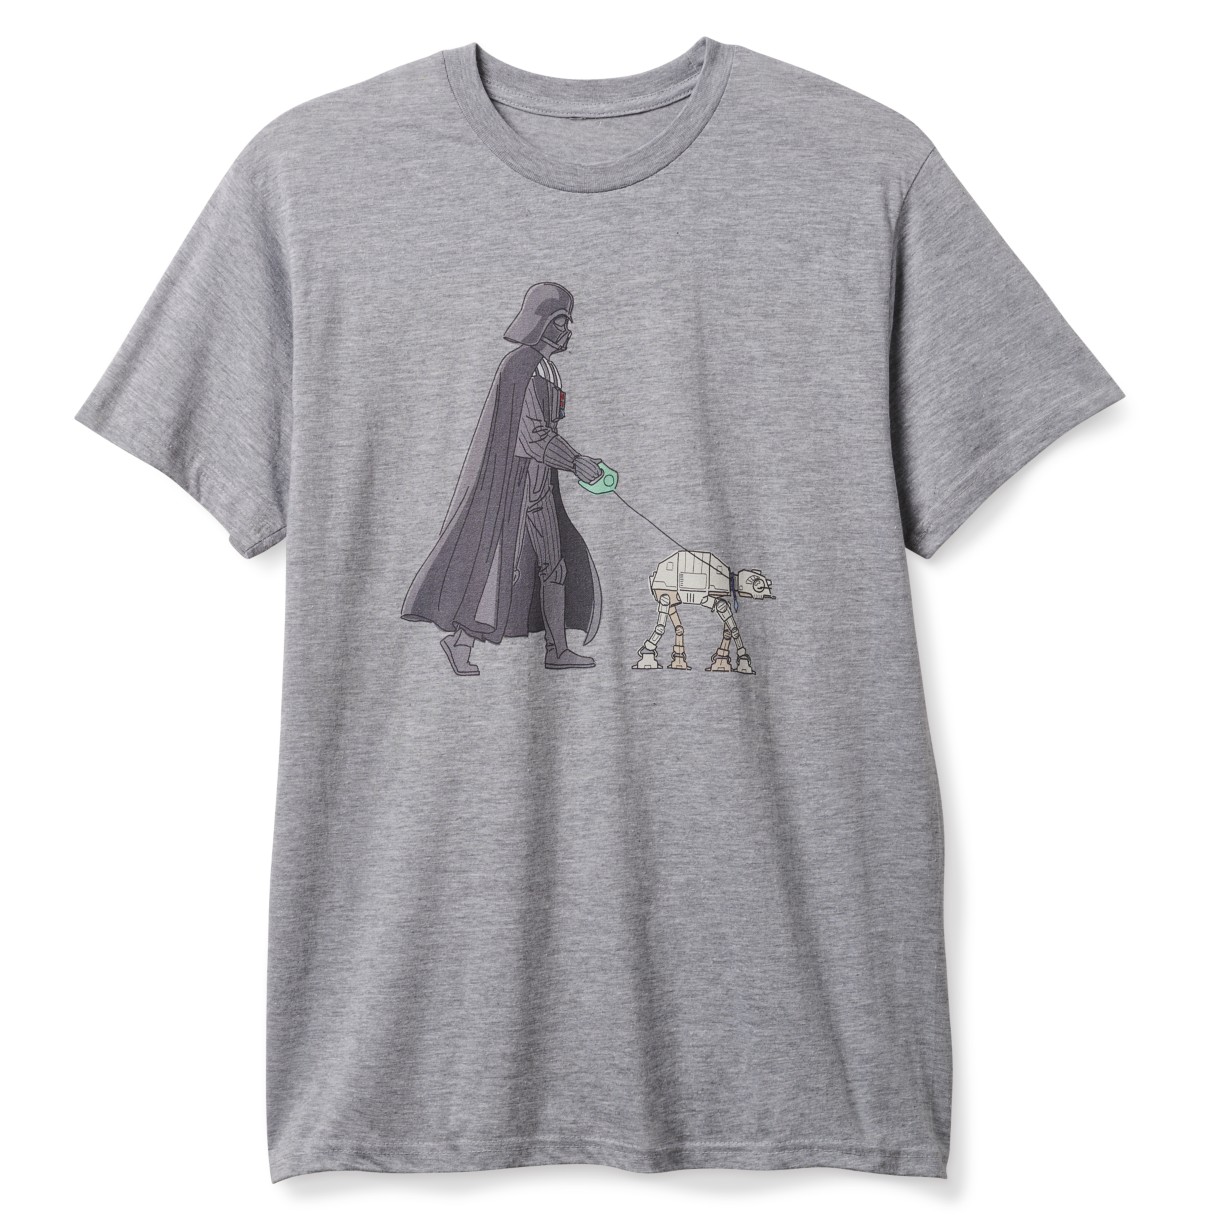 Darth Vader and AT-AT T-Shirt for Adults – Star Wars